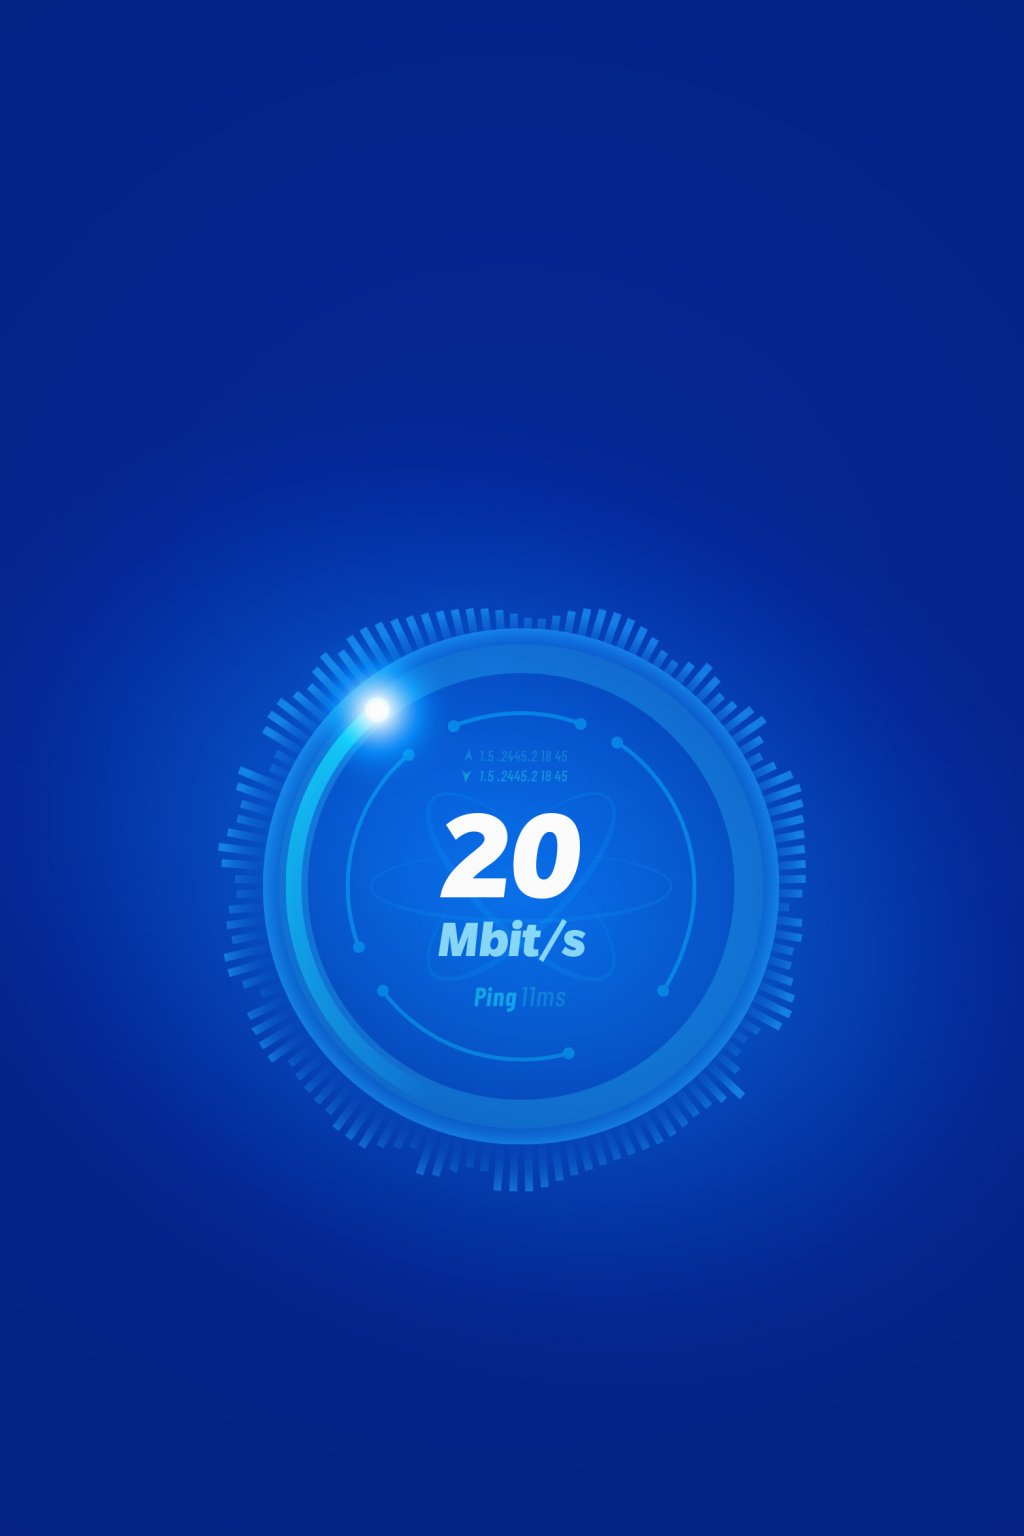 20 Mbit/s.